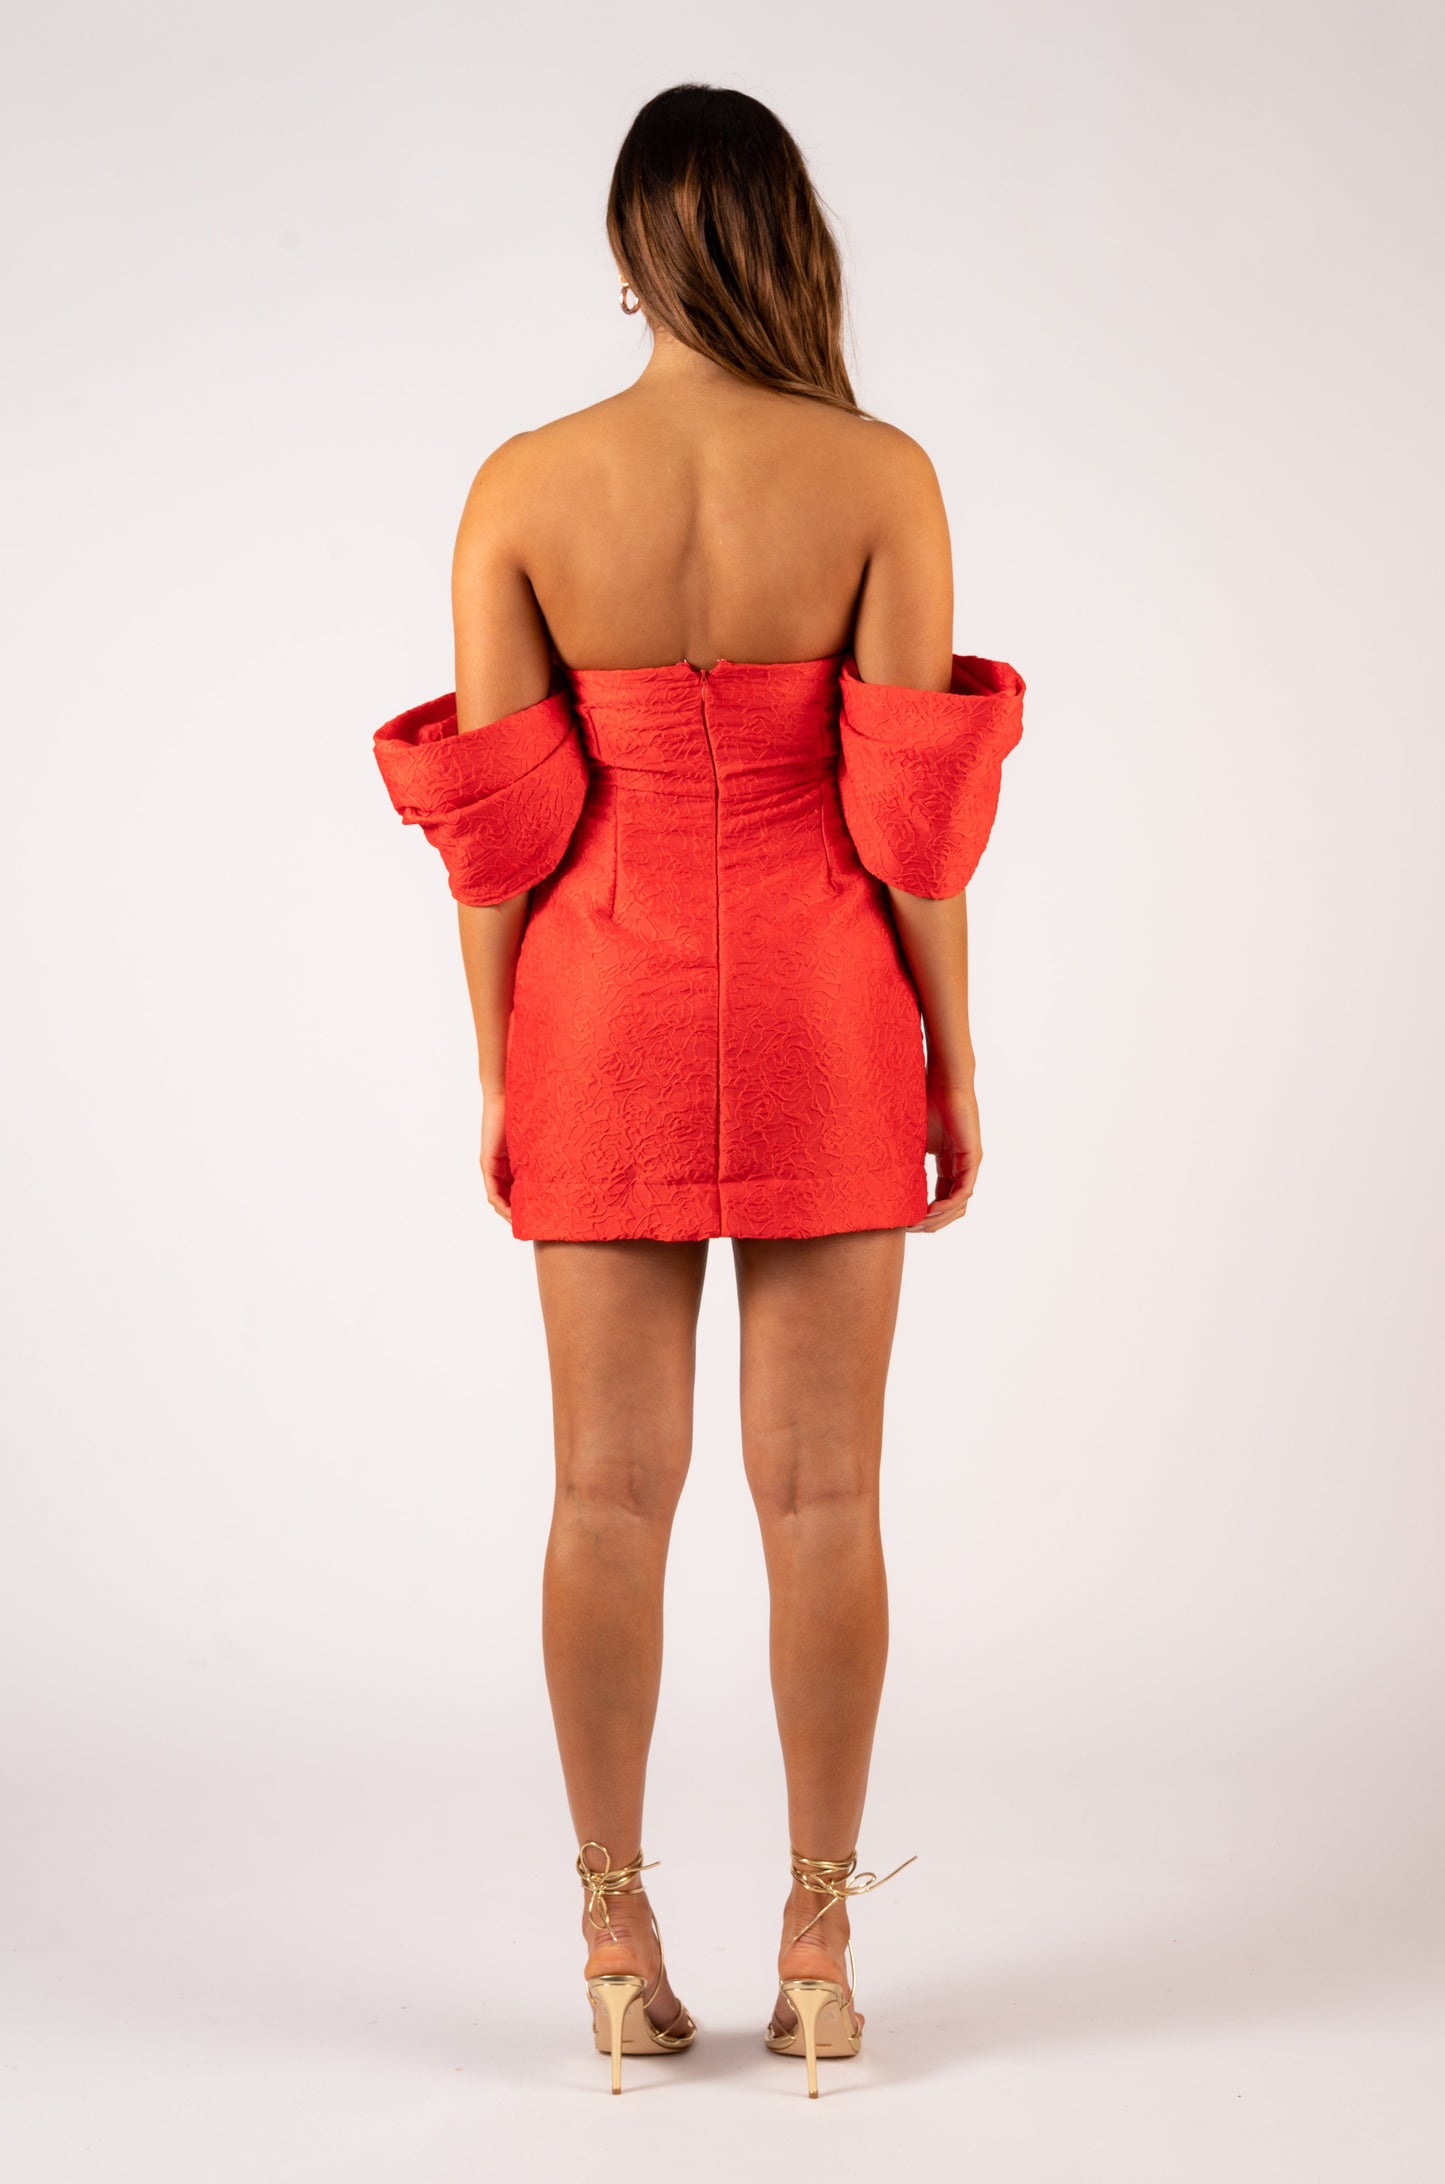 Aureta Nashira Mini Dress - Red